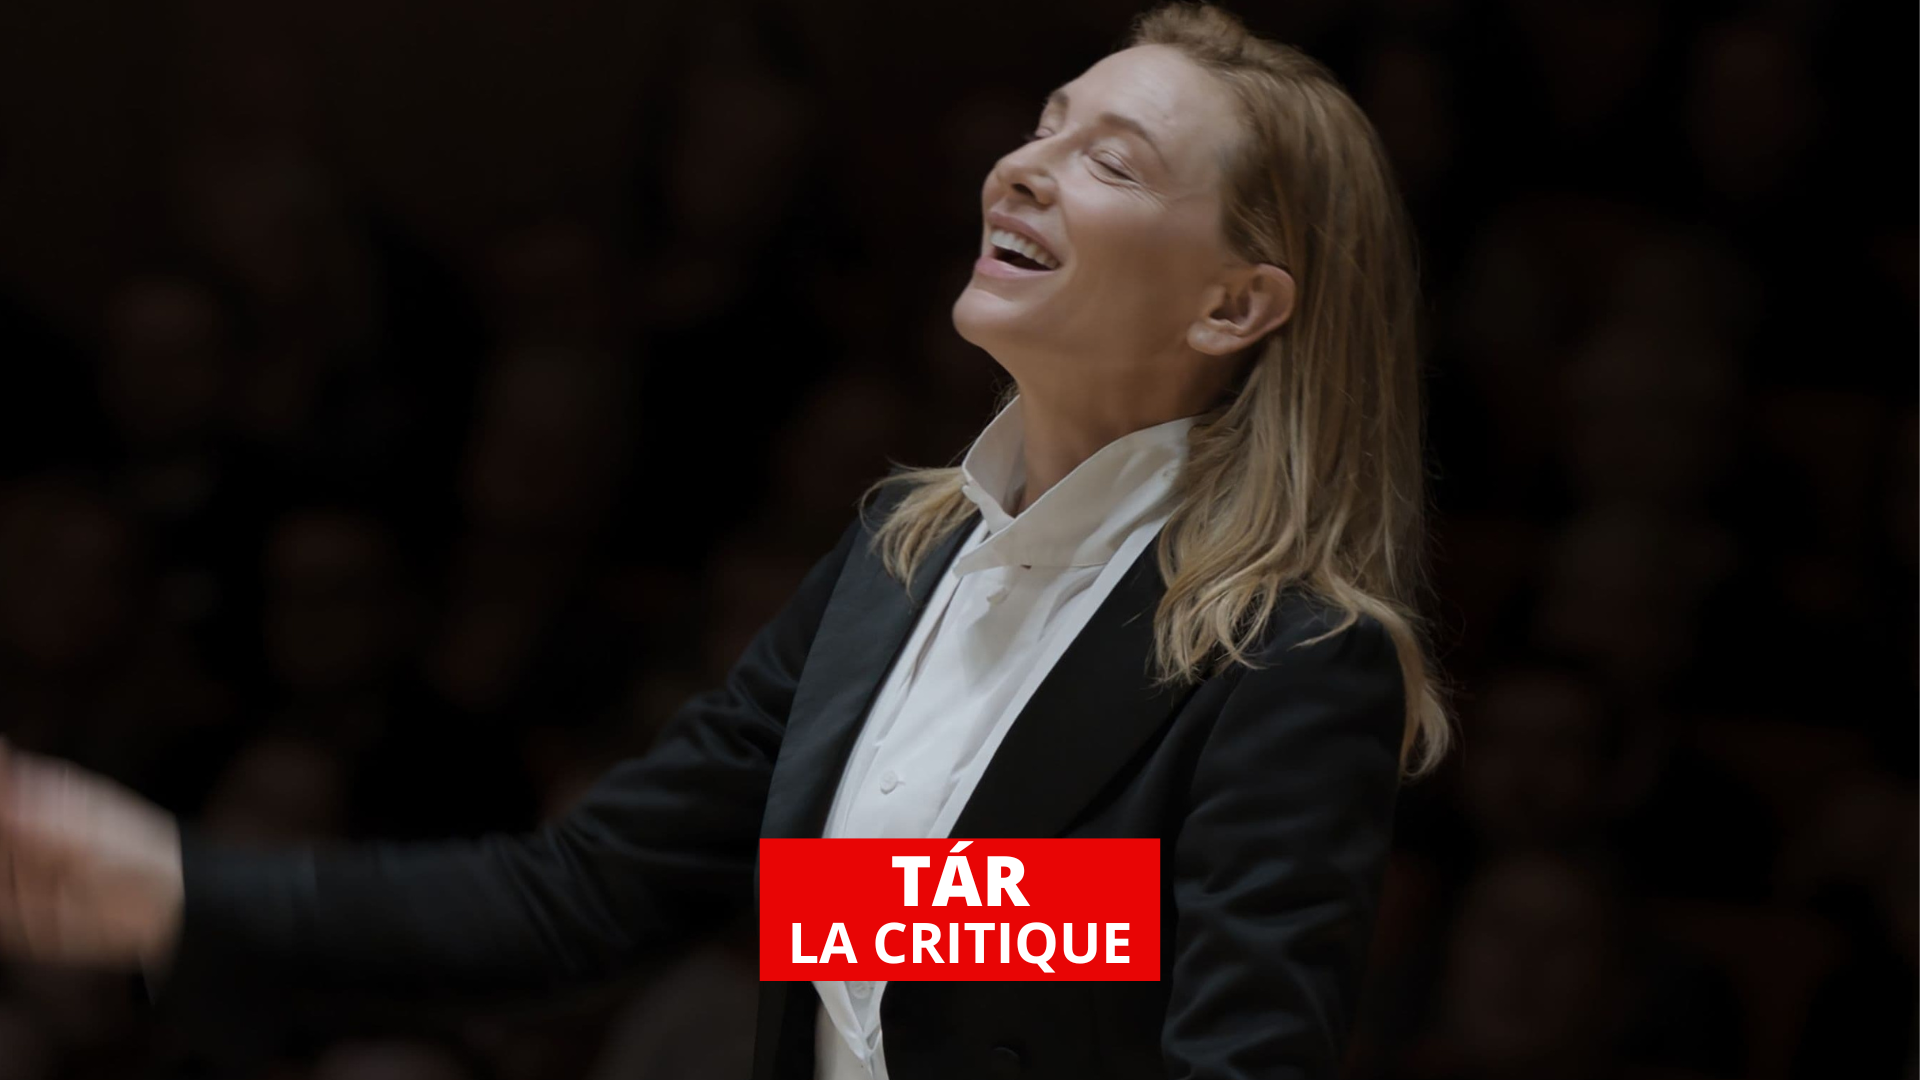 Tár : Cate Blanchett au sommet dans un portrait fascinant